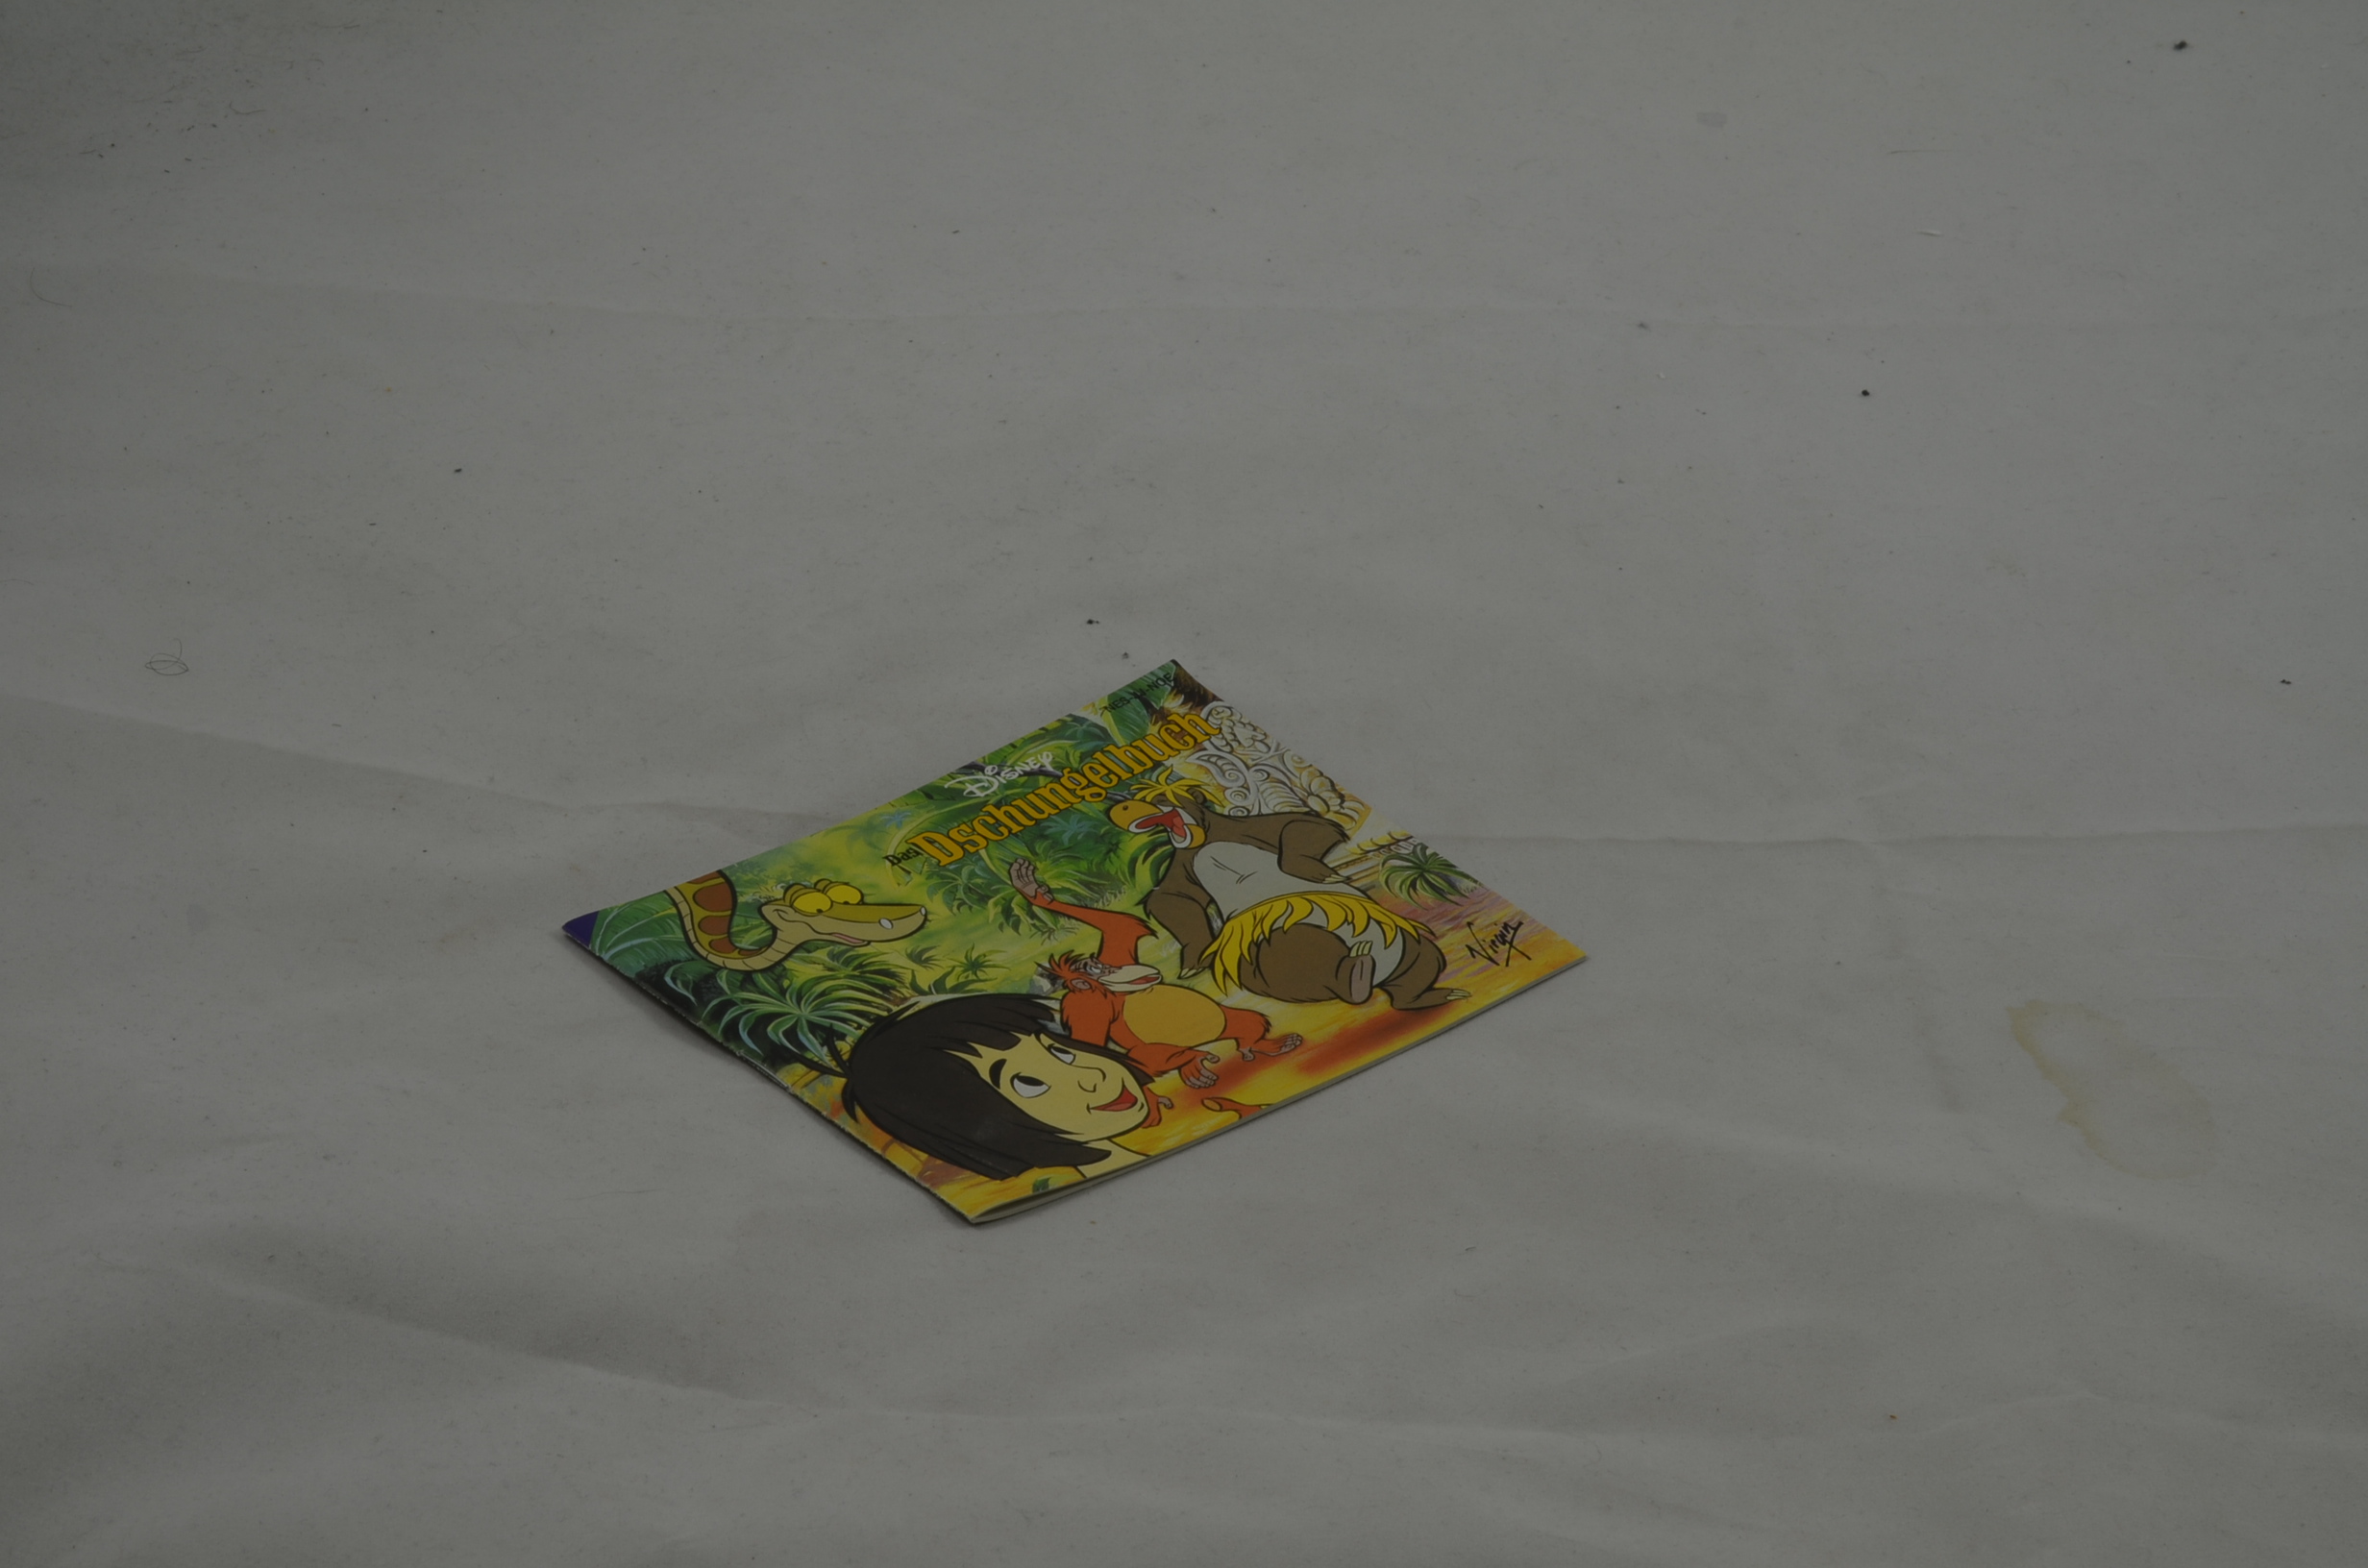 Produktbild von Dschungelbuch NES Anleitung